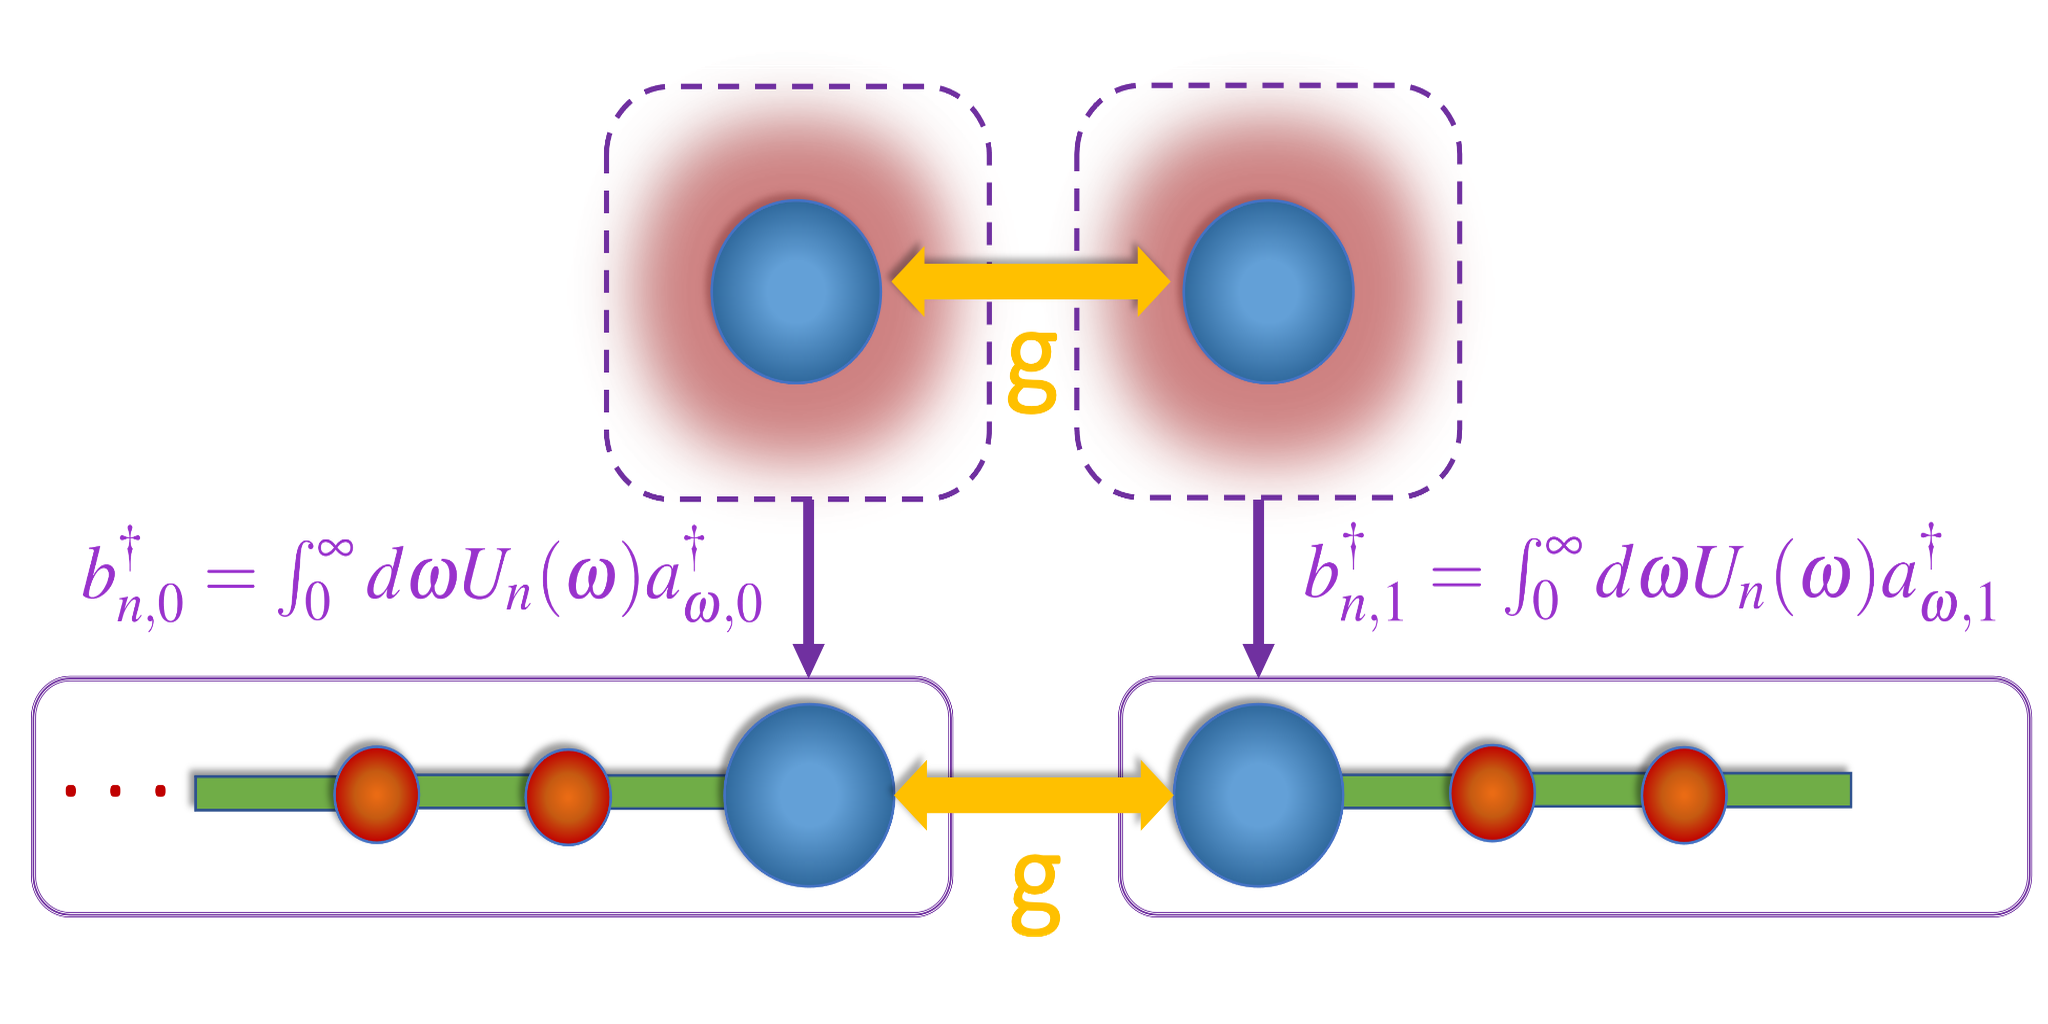 Simulasi kuantum digital dinamika non-perturbatif sistem terbuka dengan polinomial ortogonal